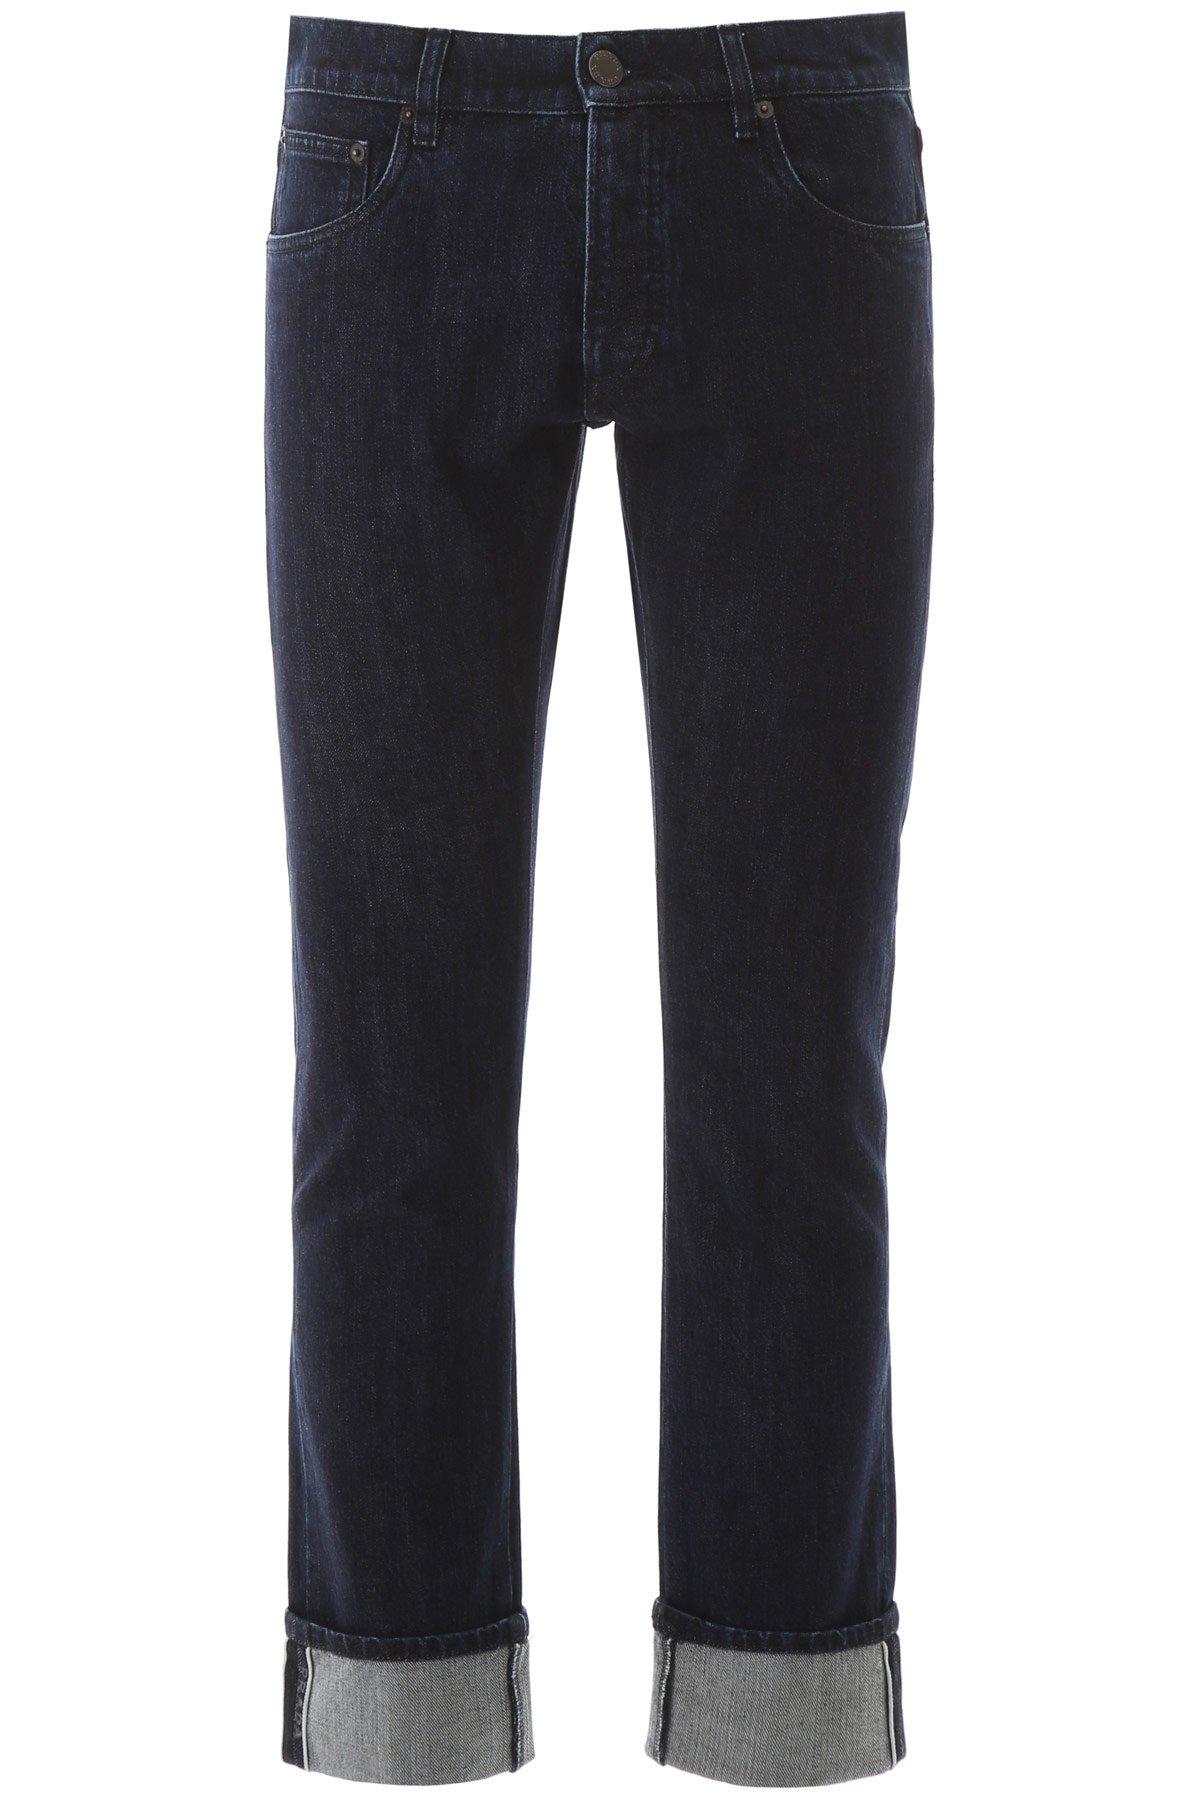 Prada Denim Selvedge Jeans in Blue for Men - Lyst